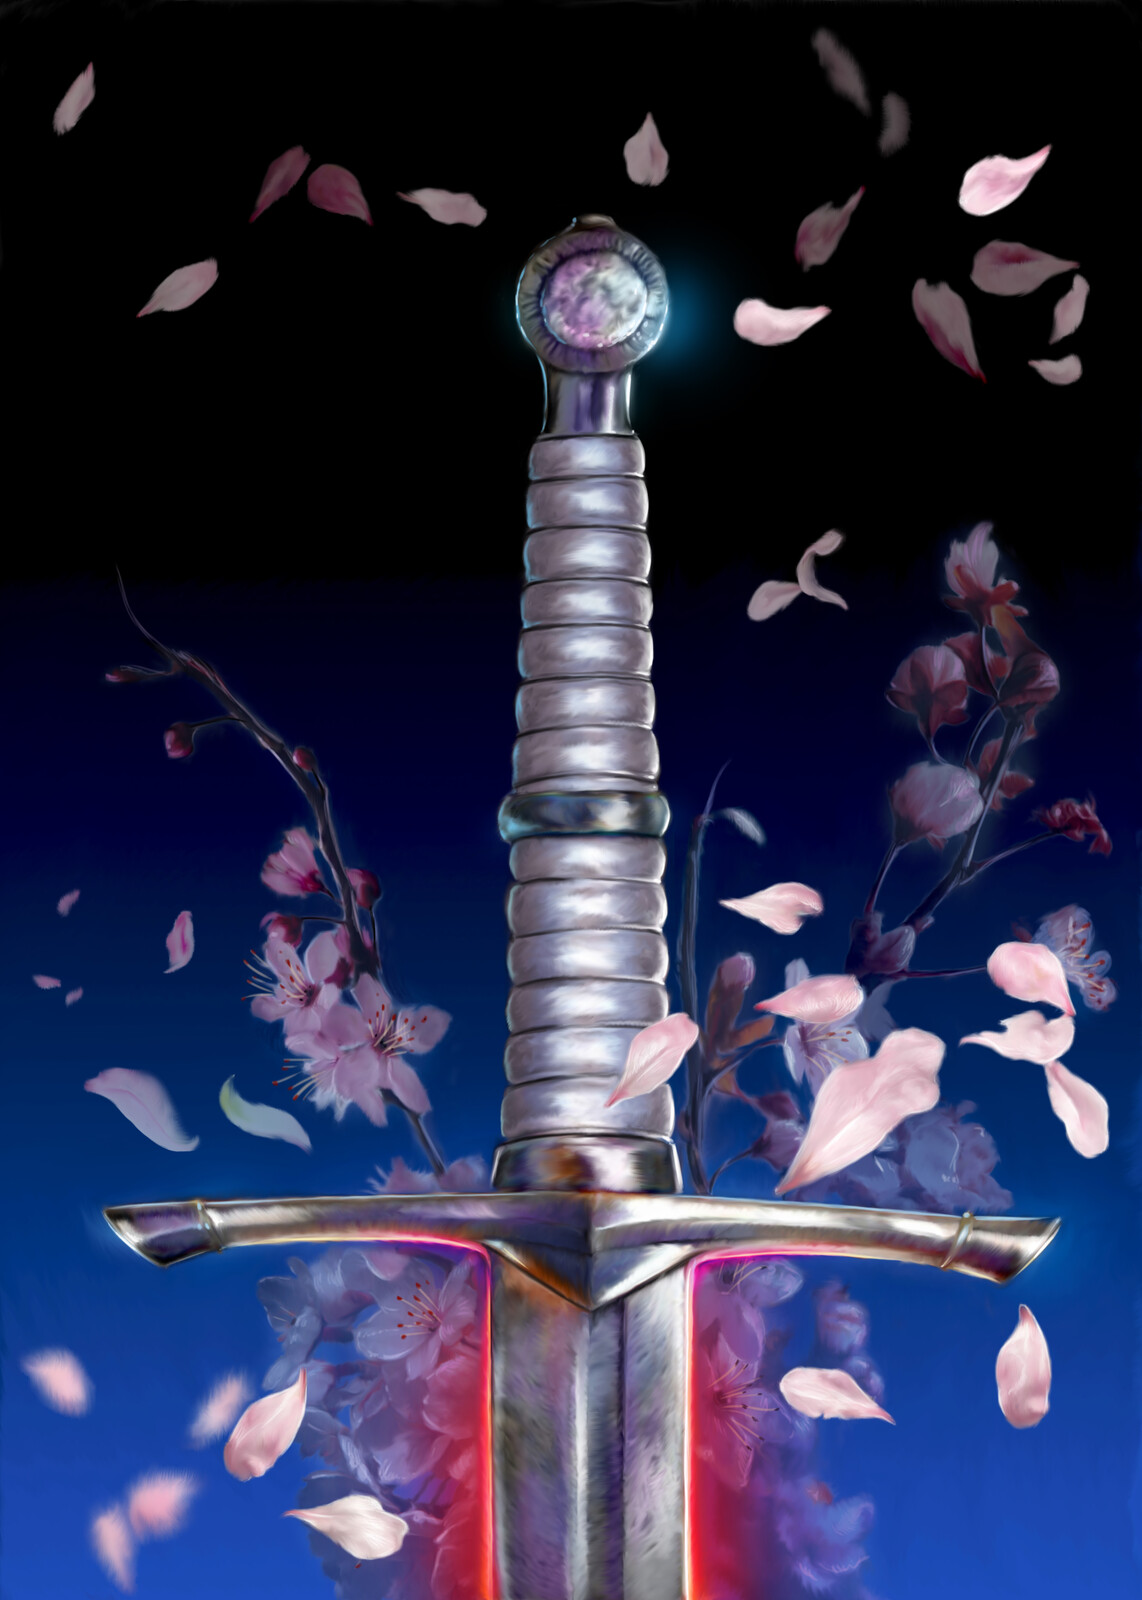 swords for cover book  Dreamscaper NEW EDITION